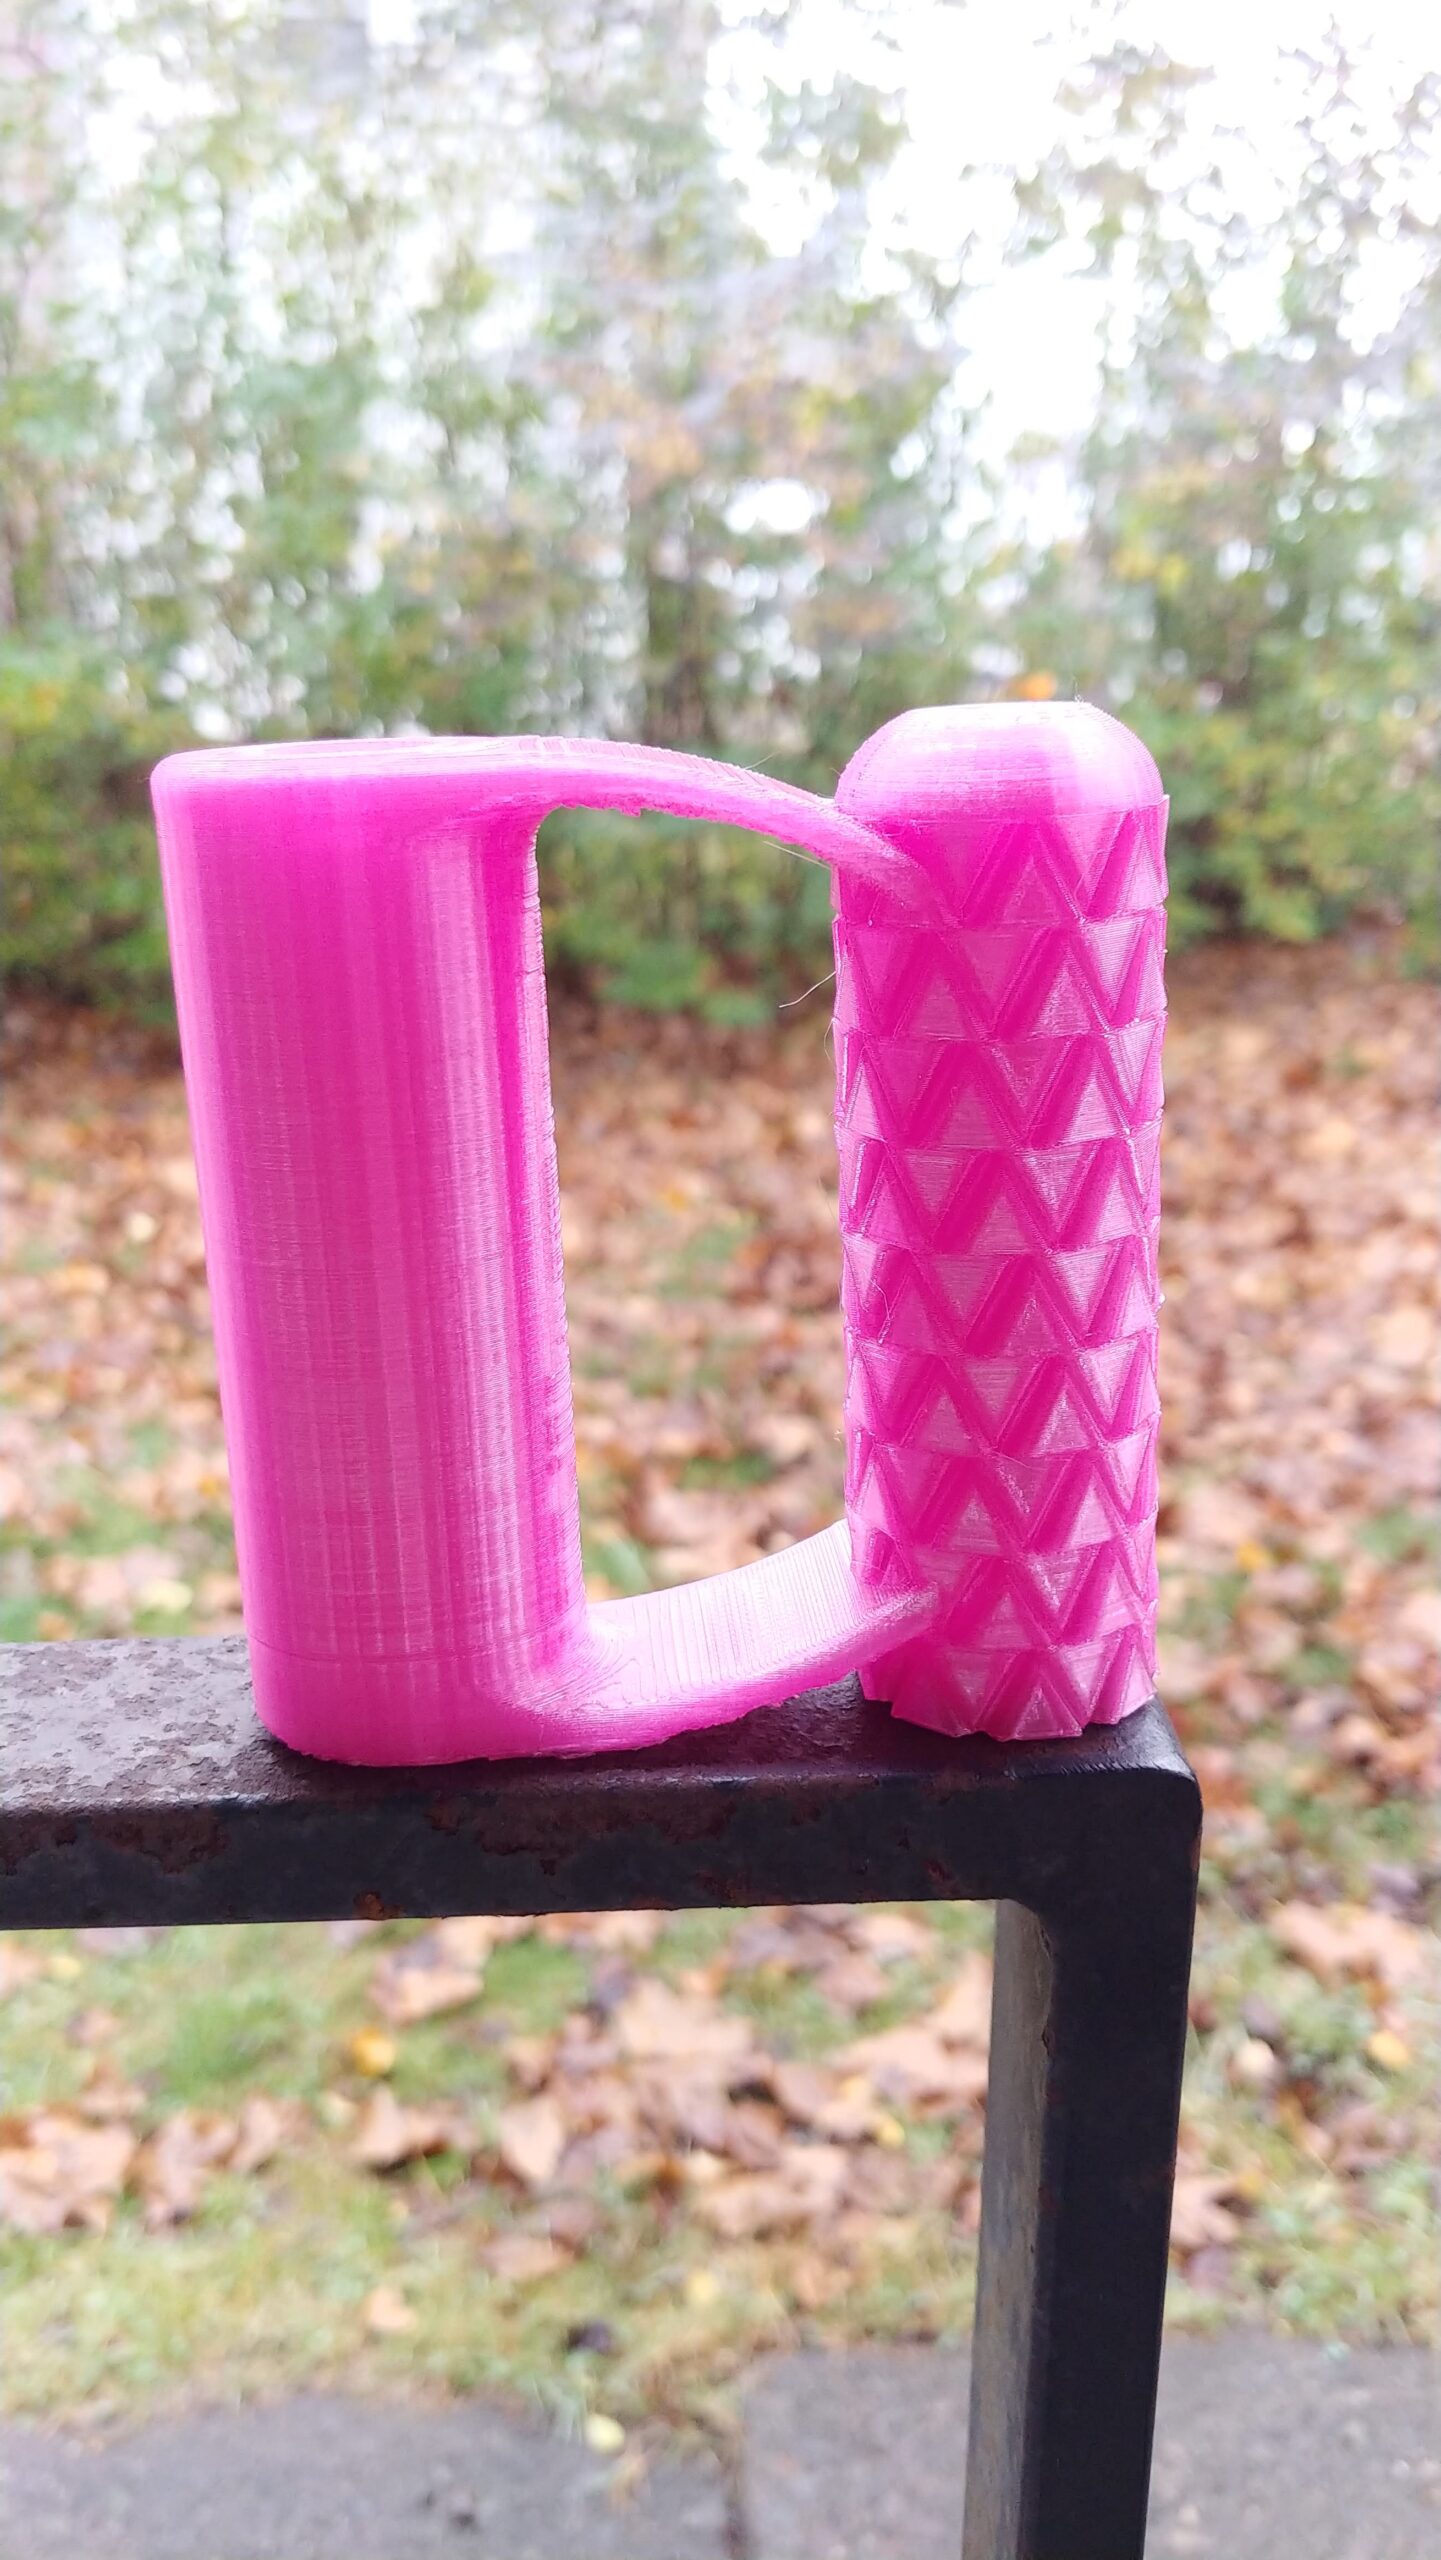 Translucent Hot Pink PETG Shovel Handle (original design)